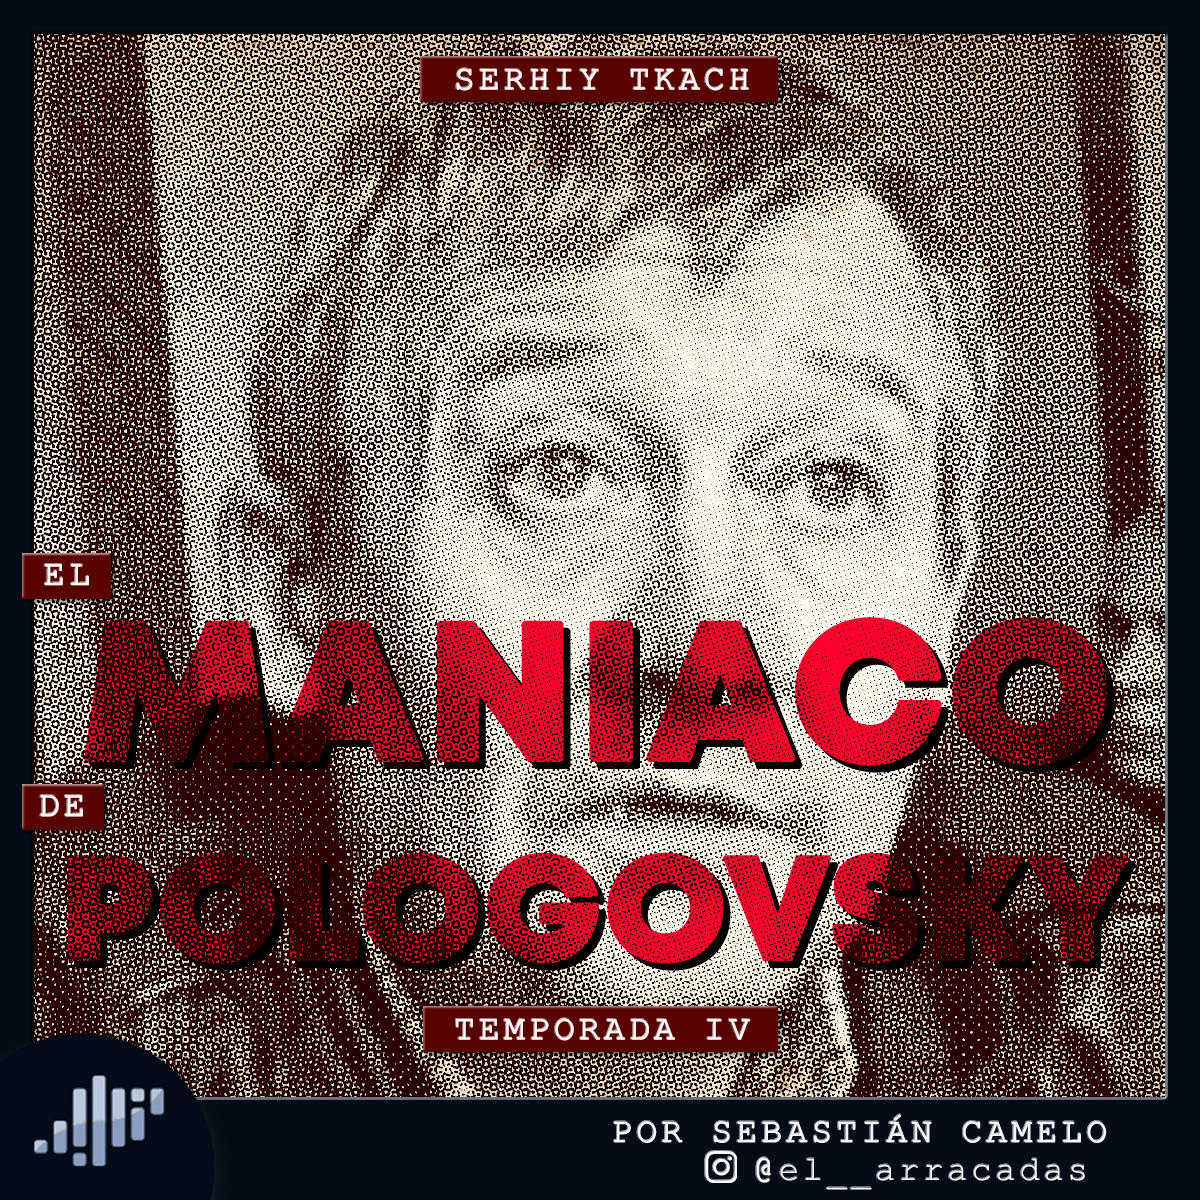 Serialmente: Serhiy Tkach | El Maniaco de Pologovsky